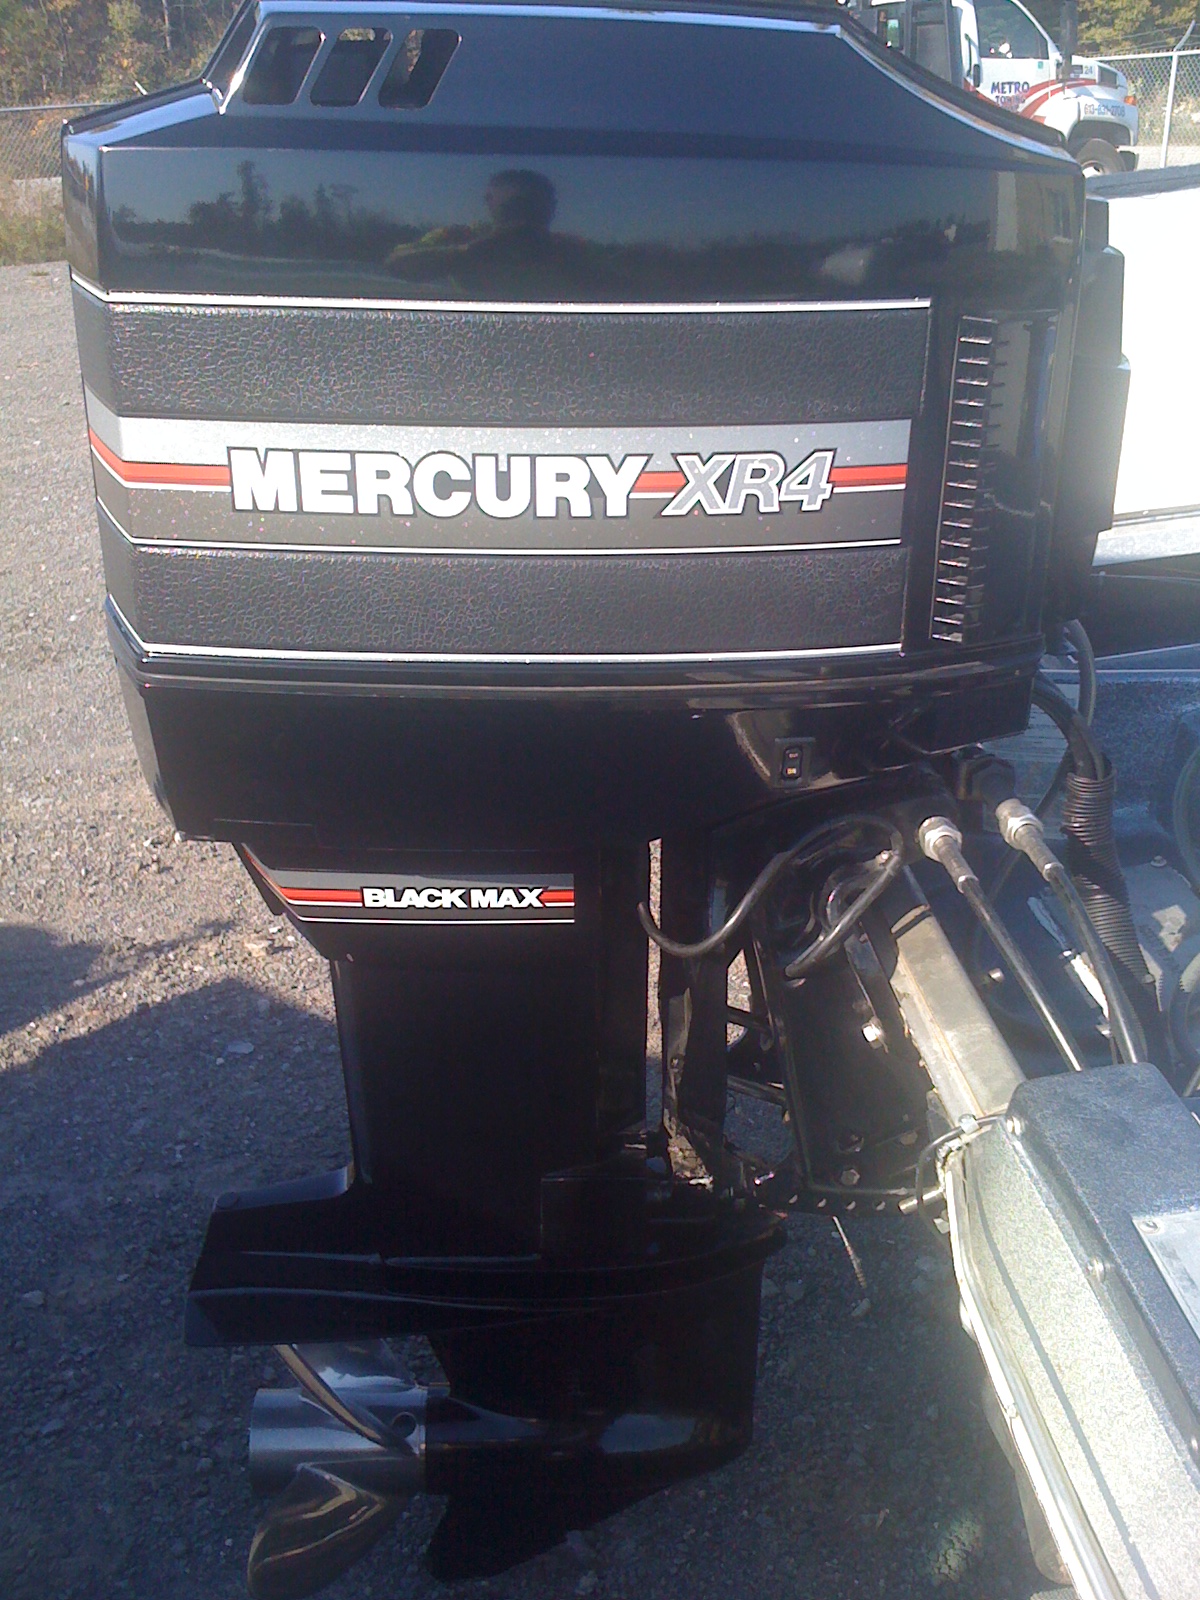 mercury bp and xr4 008.JPG